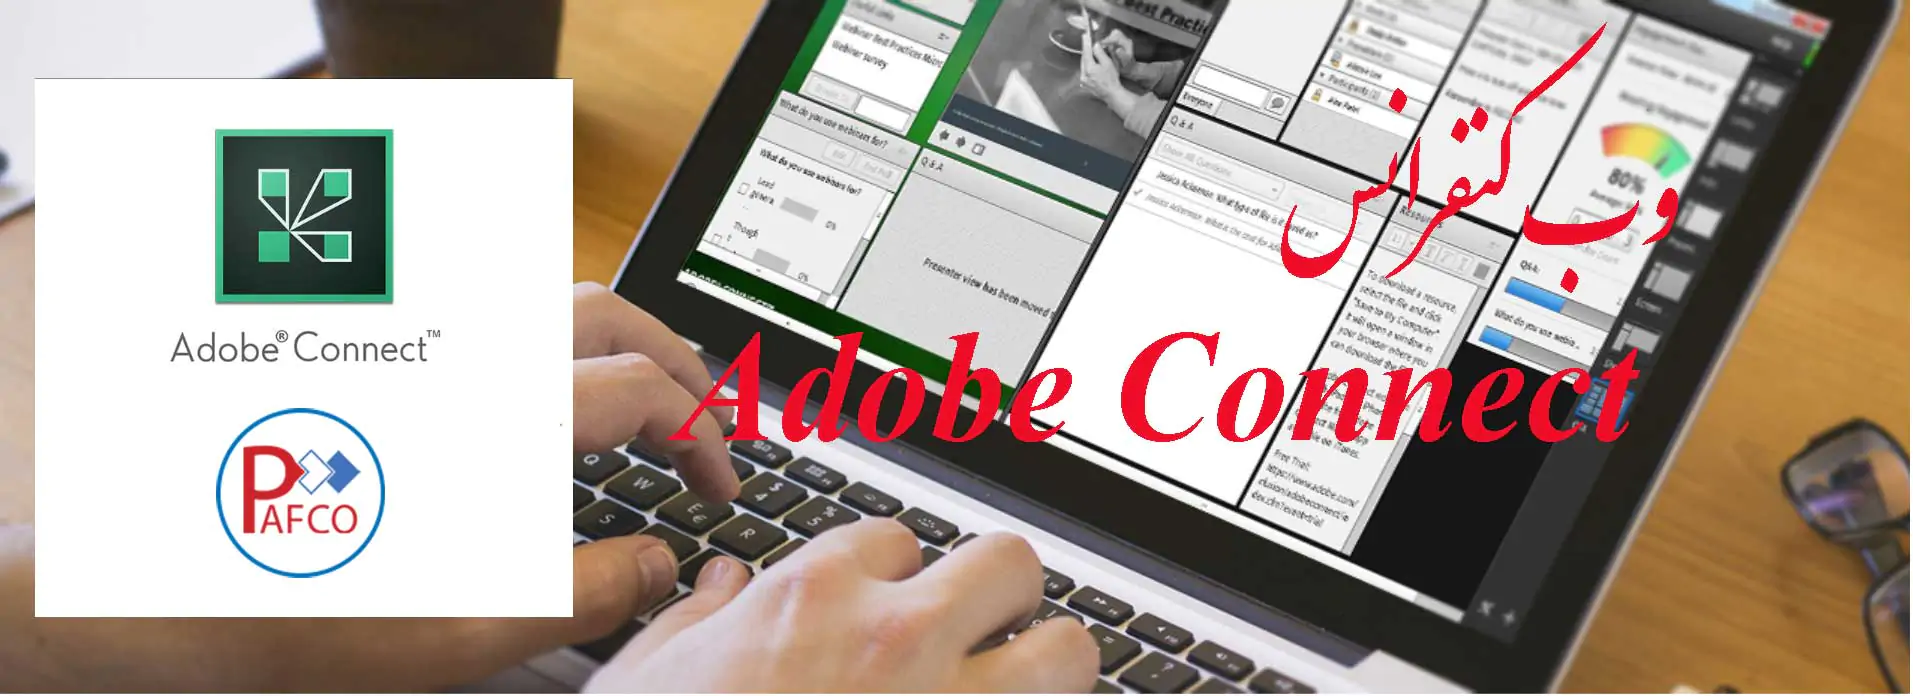 نرم افزار وب کنفرانس ادوبی کانکت Adobe Connect چیست ؟